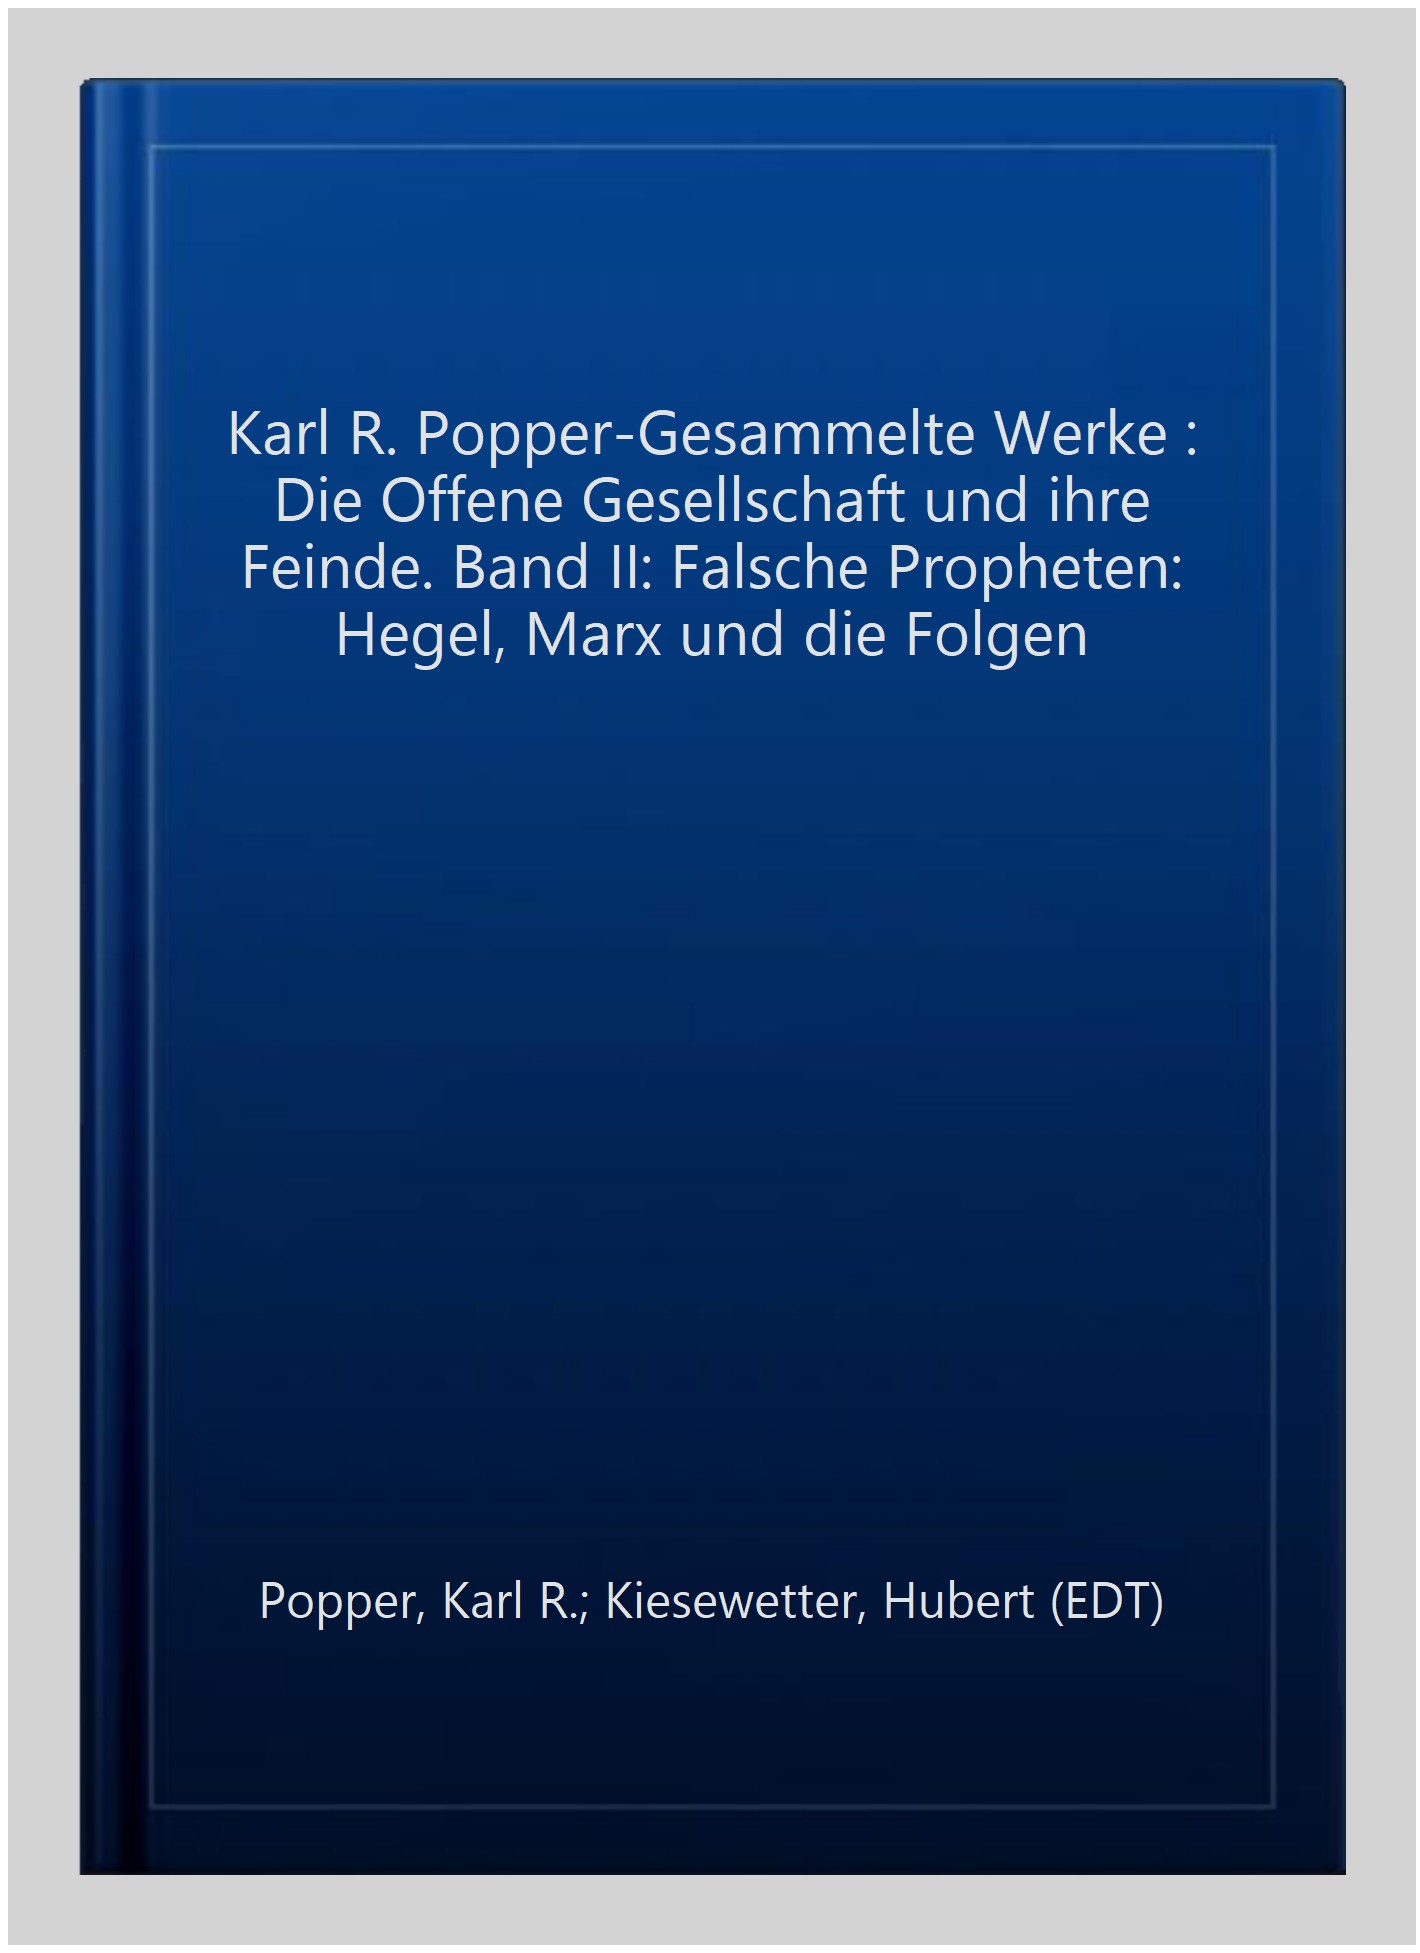 Karl R. Popper-Gesammelte Werke : Die Offene Gesellschaft und ihre Feinde. Band II: Falsche Propheten: Hegel, Marx und die Folgen -Language: german - Popper, Karl R.; Kiesewetter, Hubert (EDT)